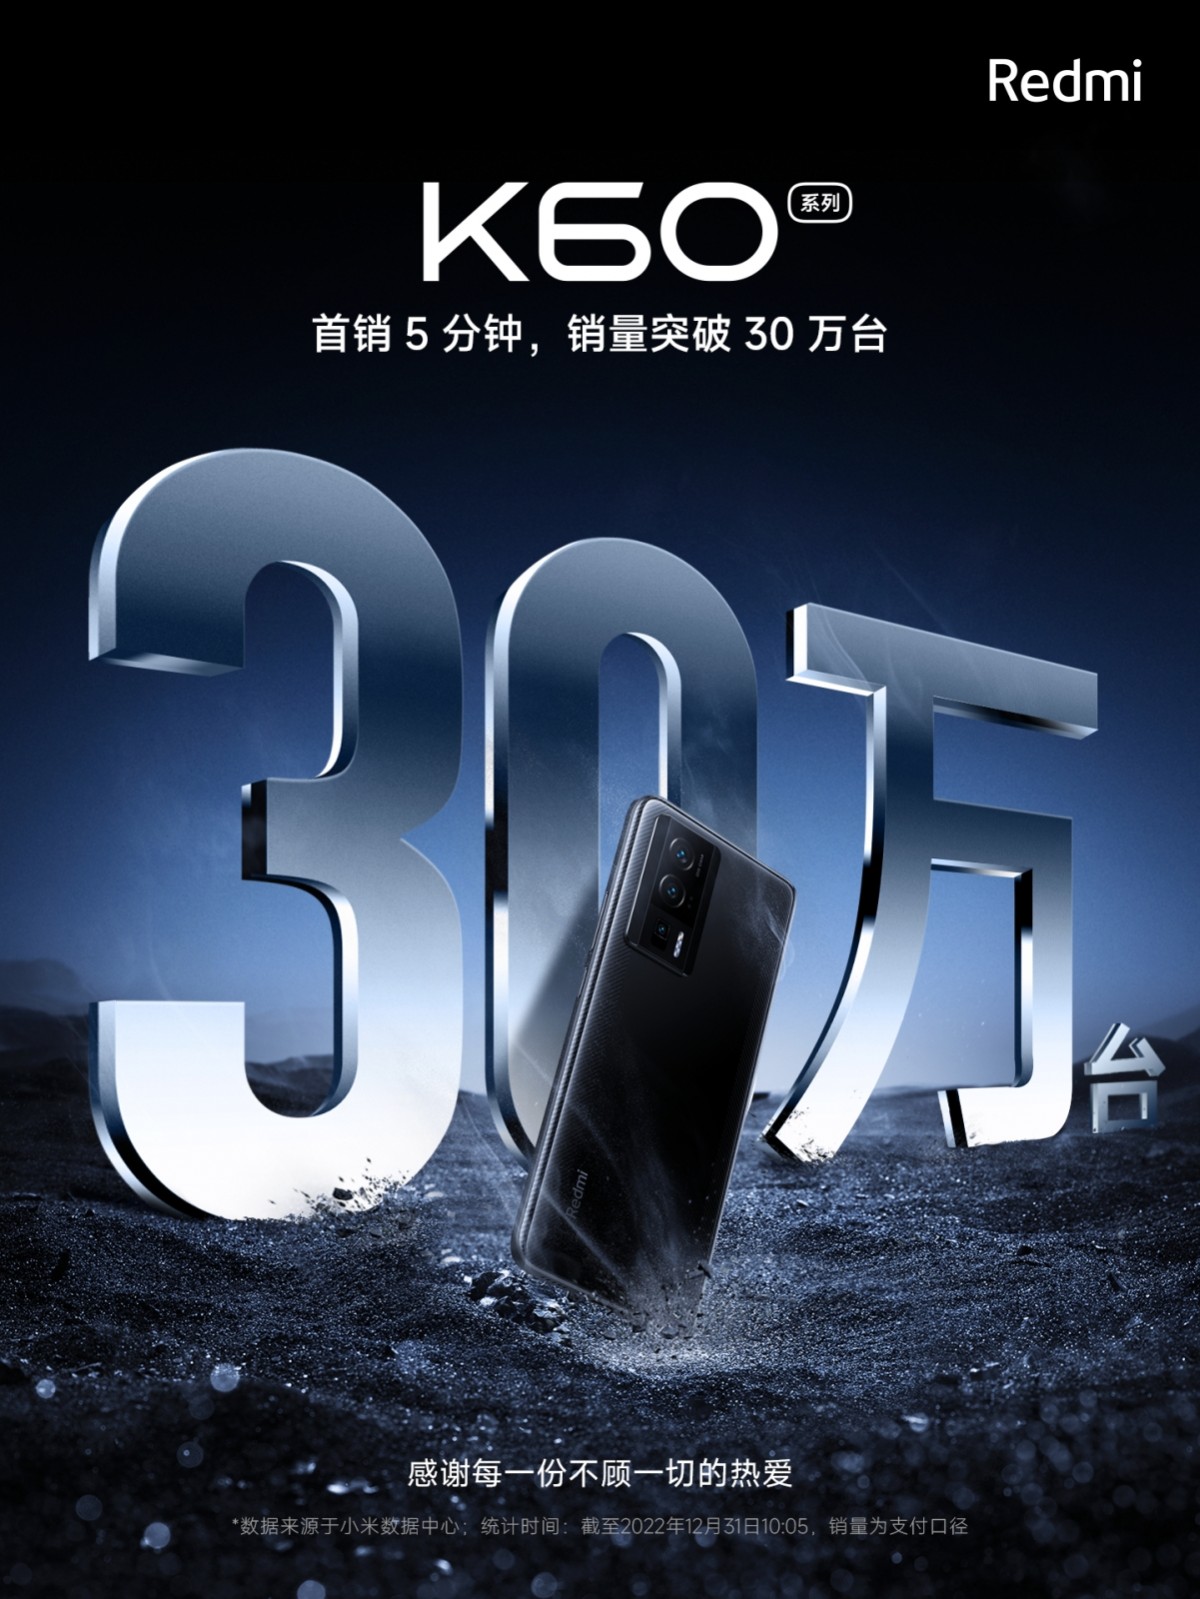 Xiaomi empuja 300,000 teléfonos Redmi K60 en 5 minutos